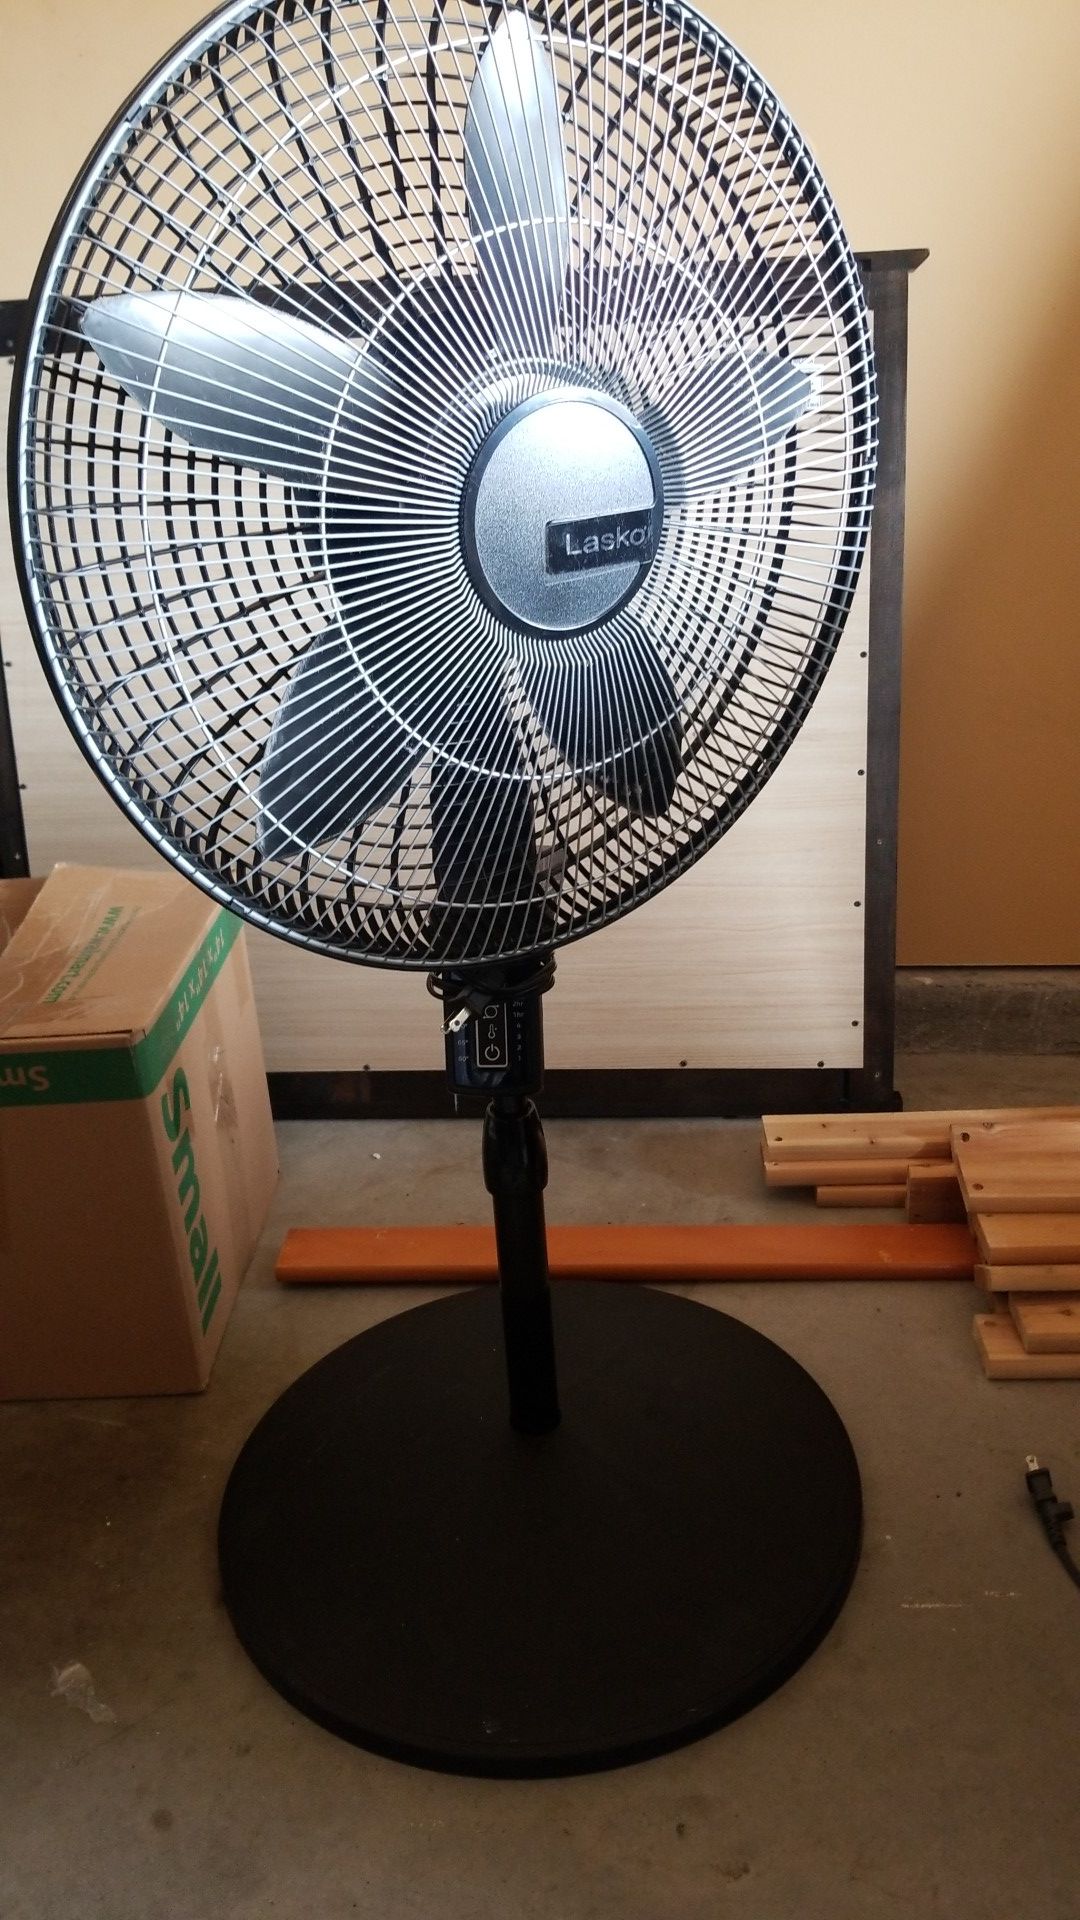 Lasko oscillate fan with remote